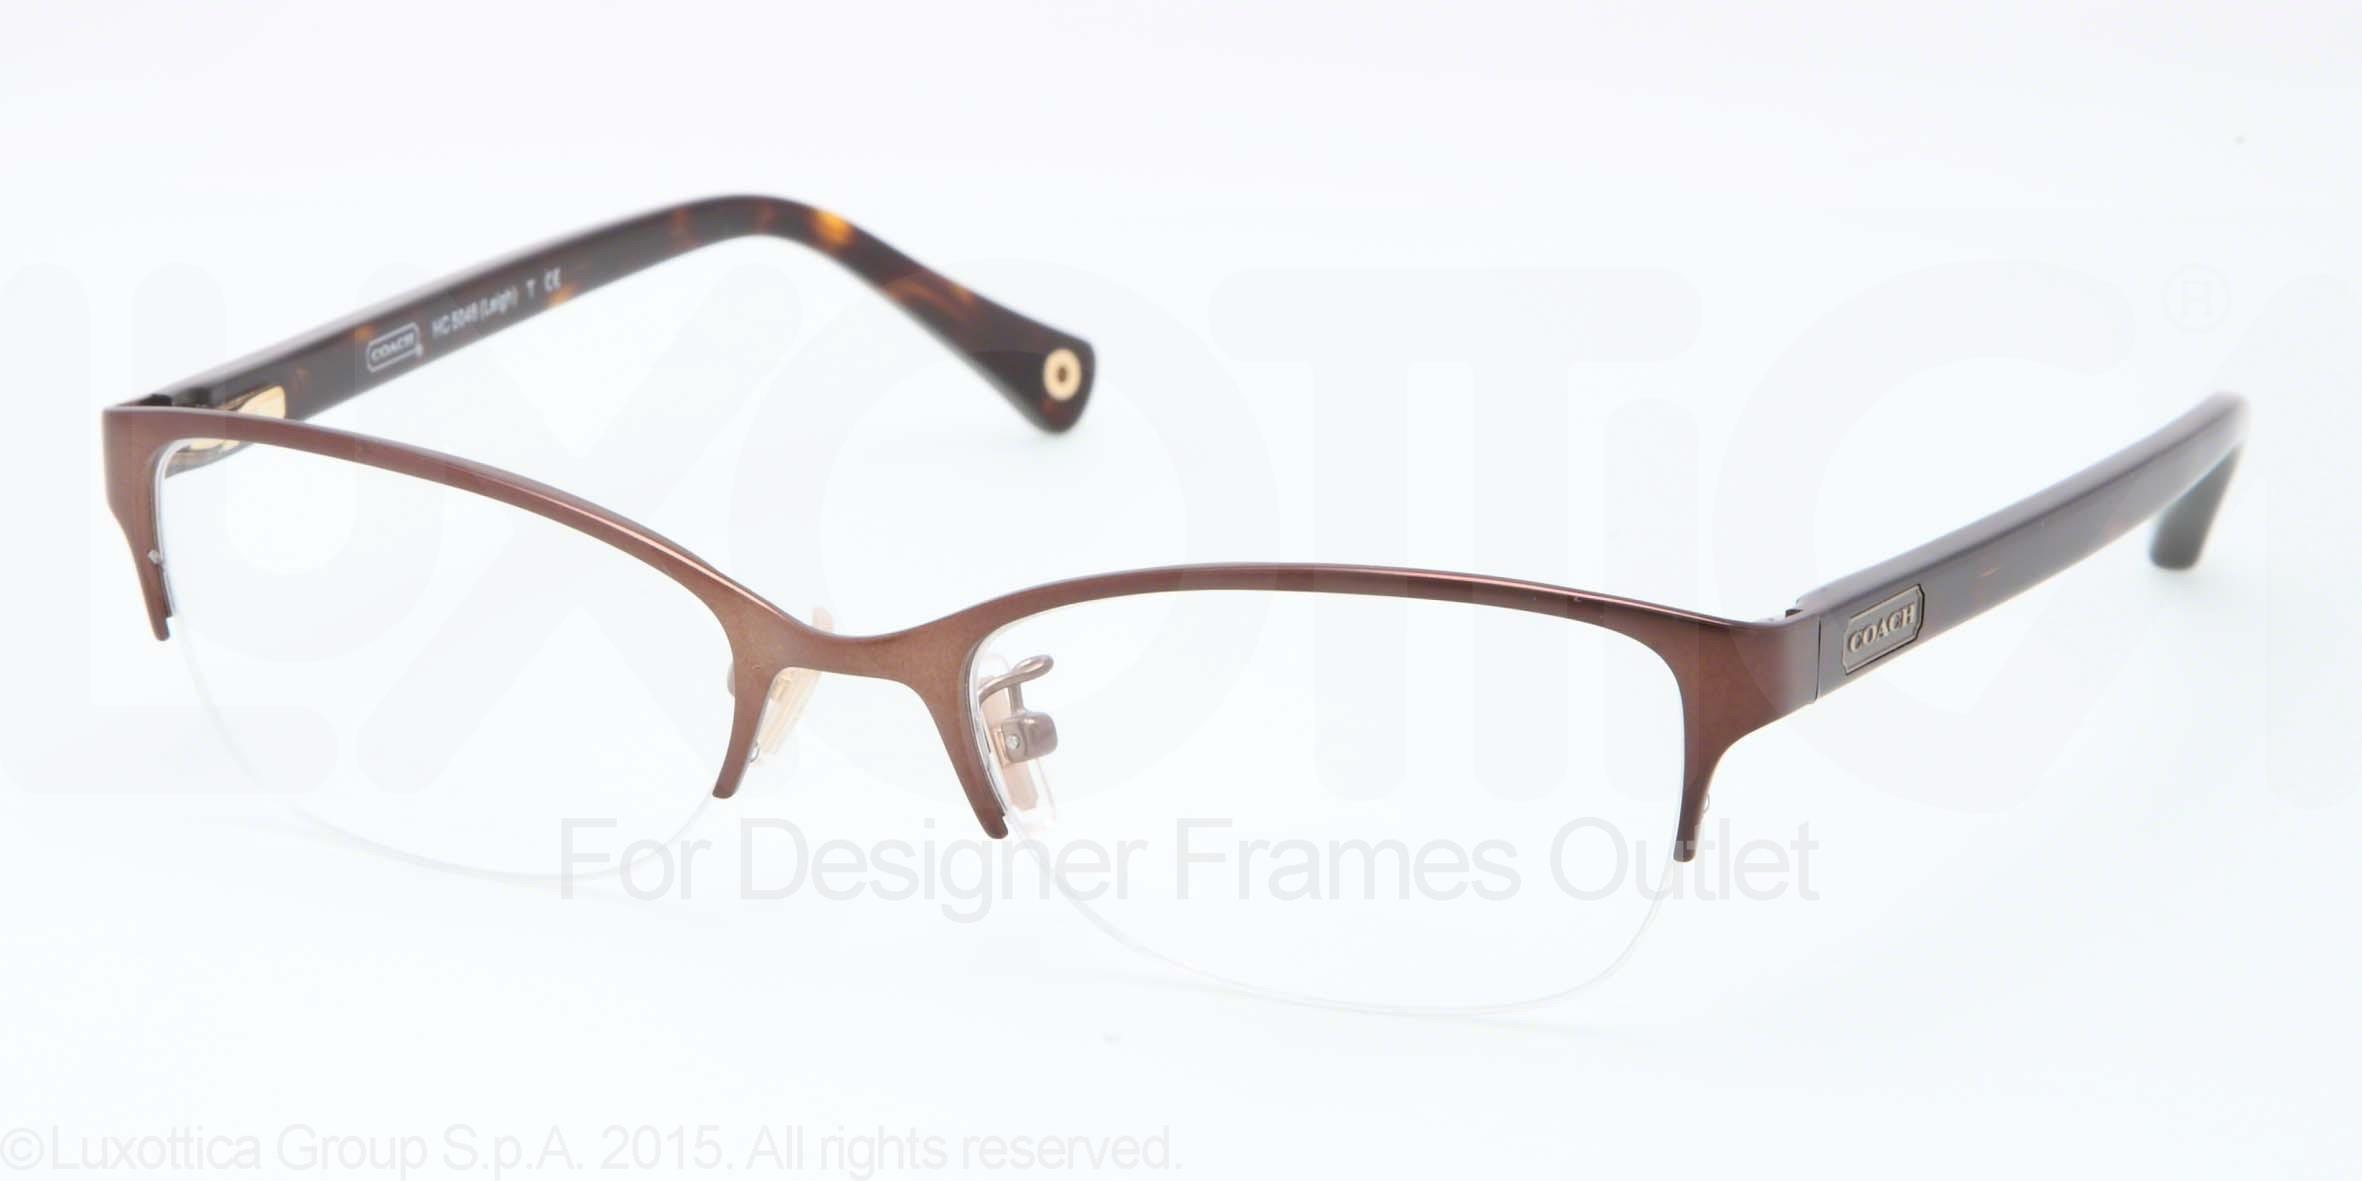 Designer Frames Outlet Coach Eyeglasses Hc5046